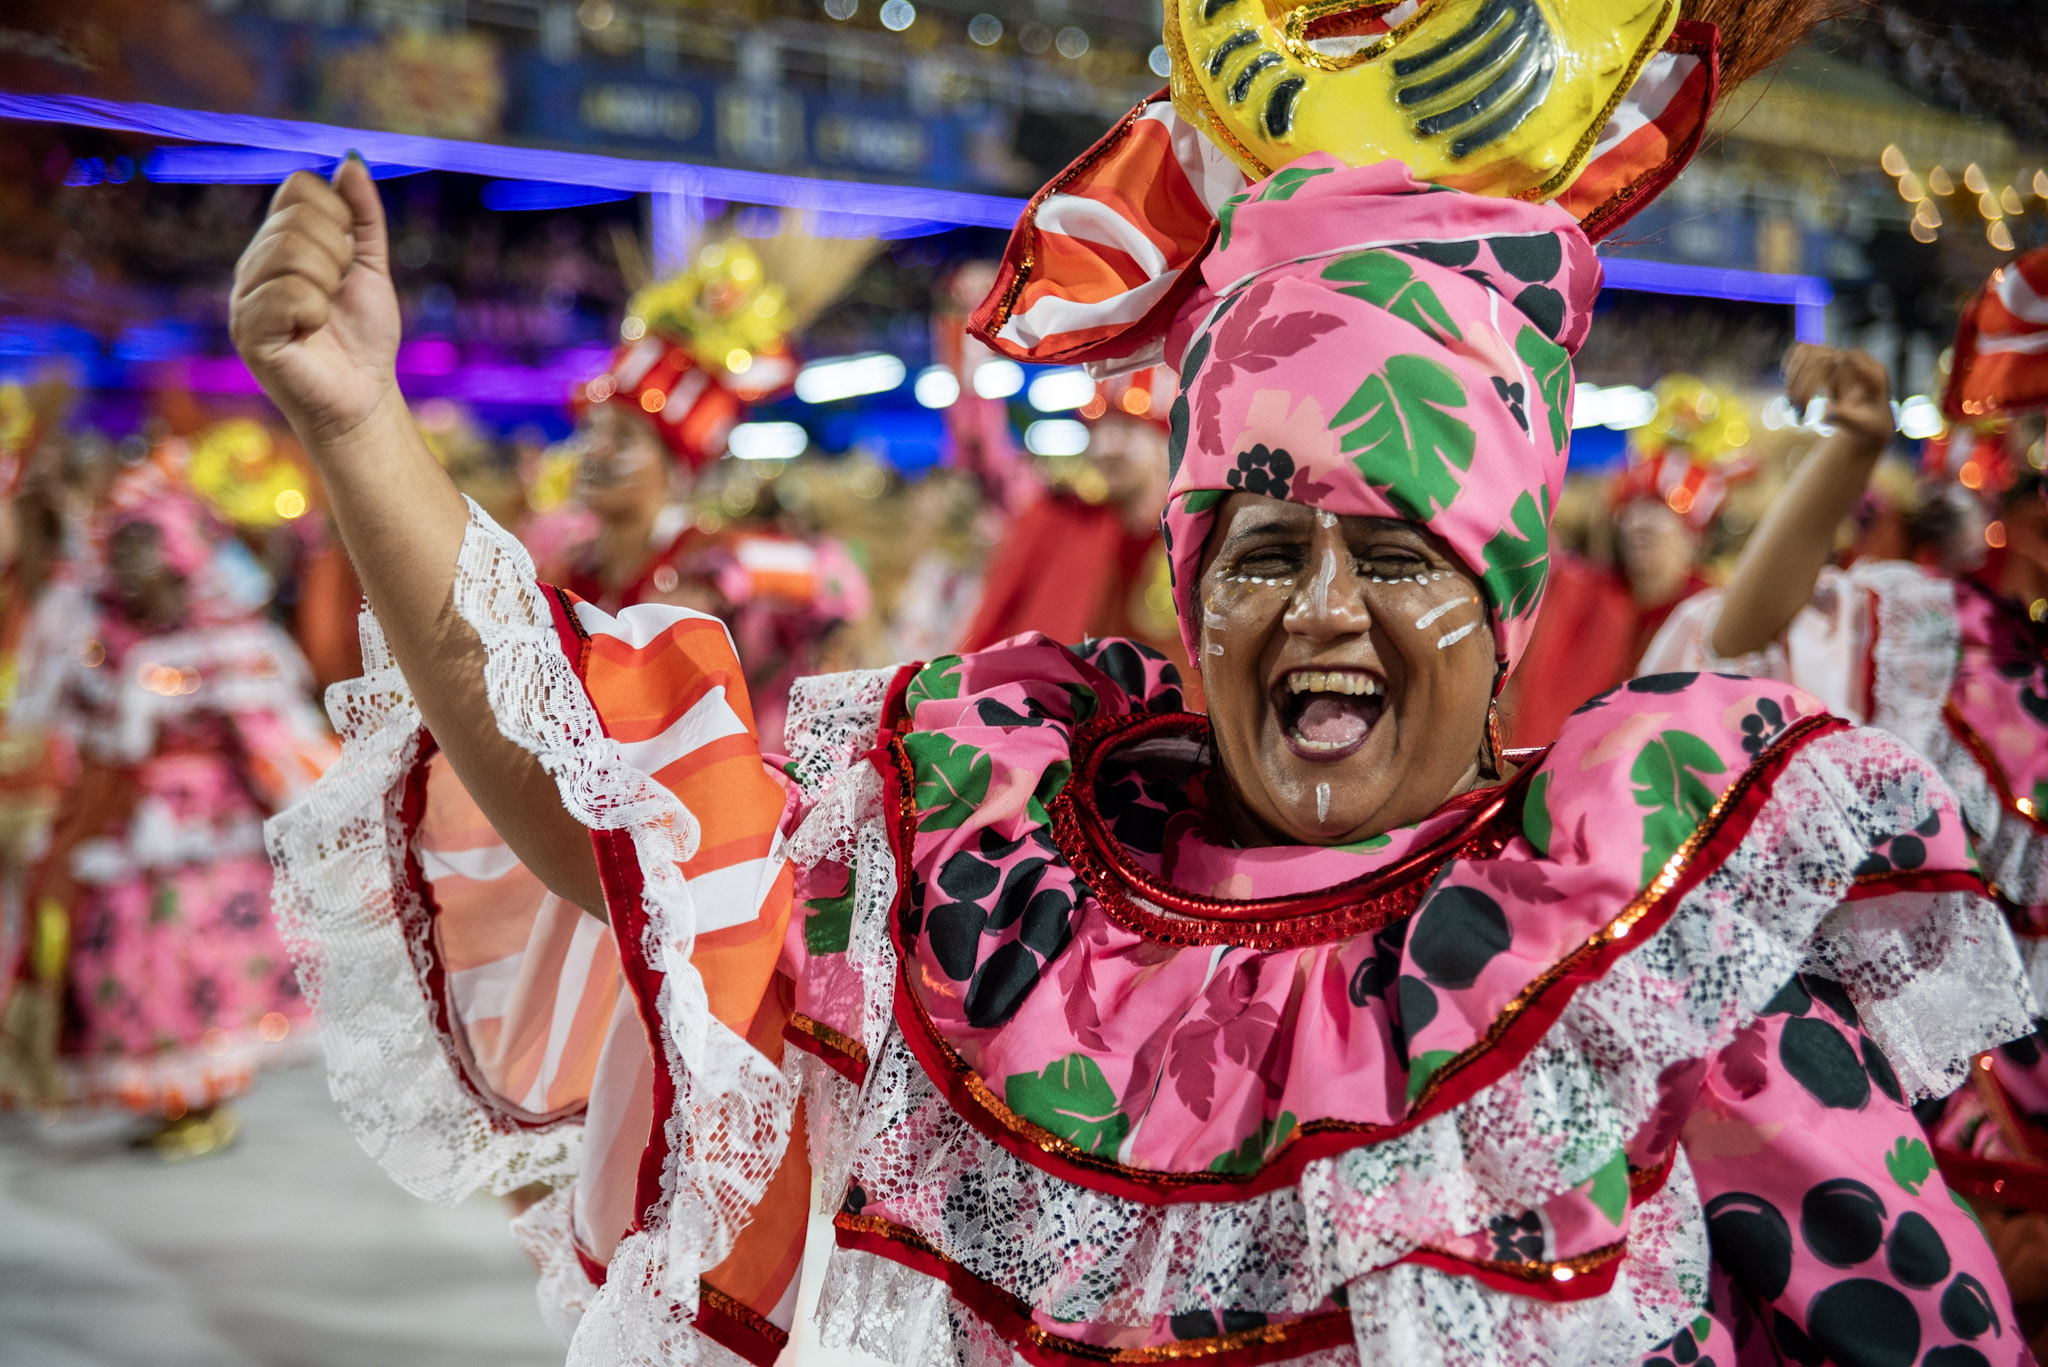 BA-DER-NA! Maria do Povo: Ilha divulga seu enredo para o Carnaval 2025